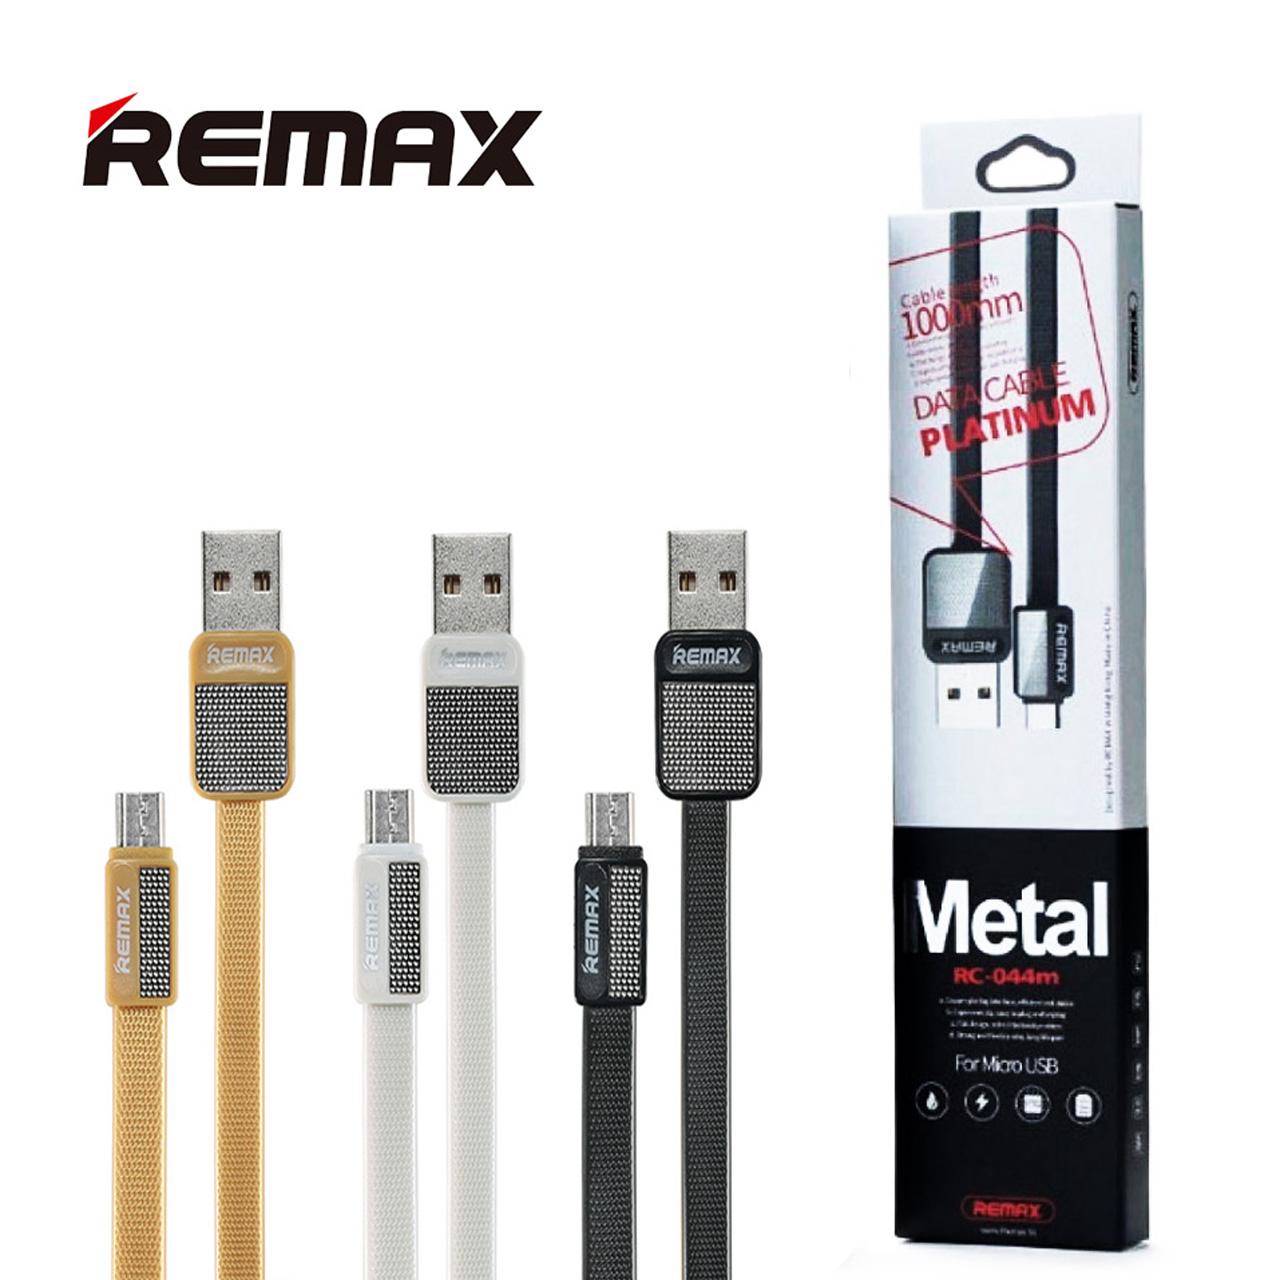 Remax Micro USB RC-044m